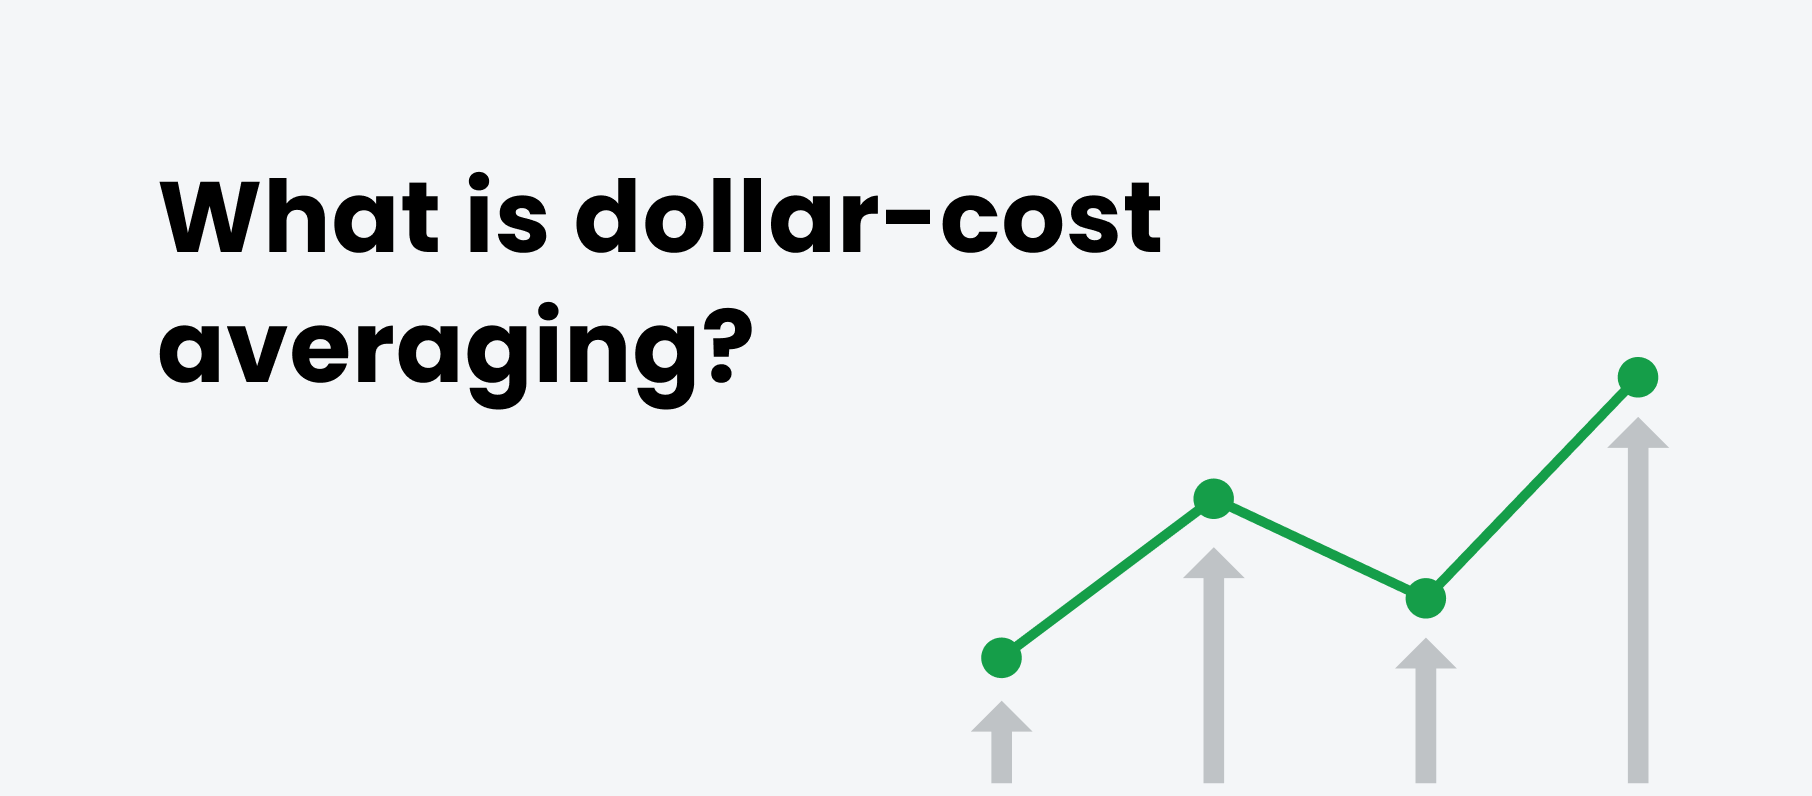 میانگین هزینه دلاری چیست؟